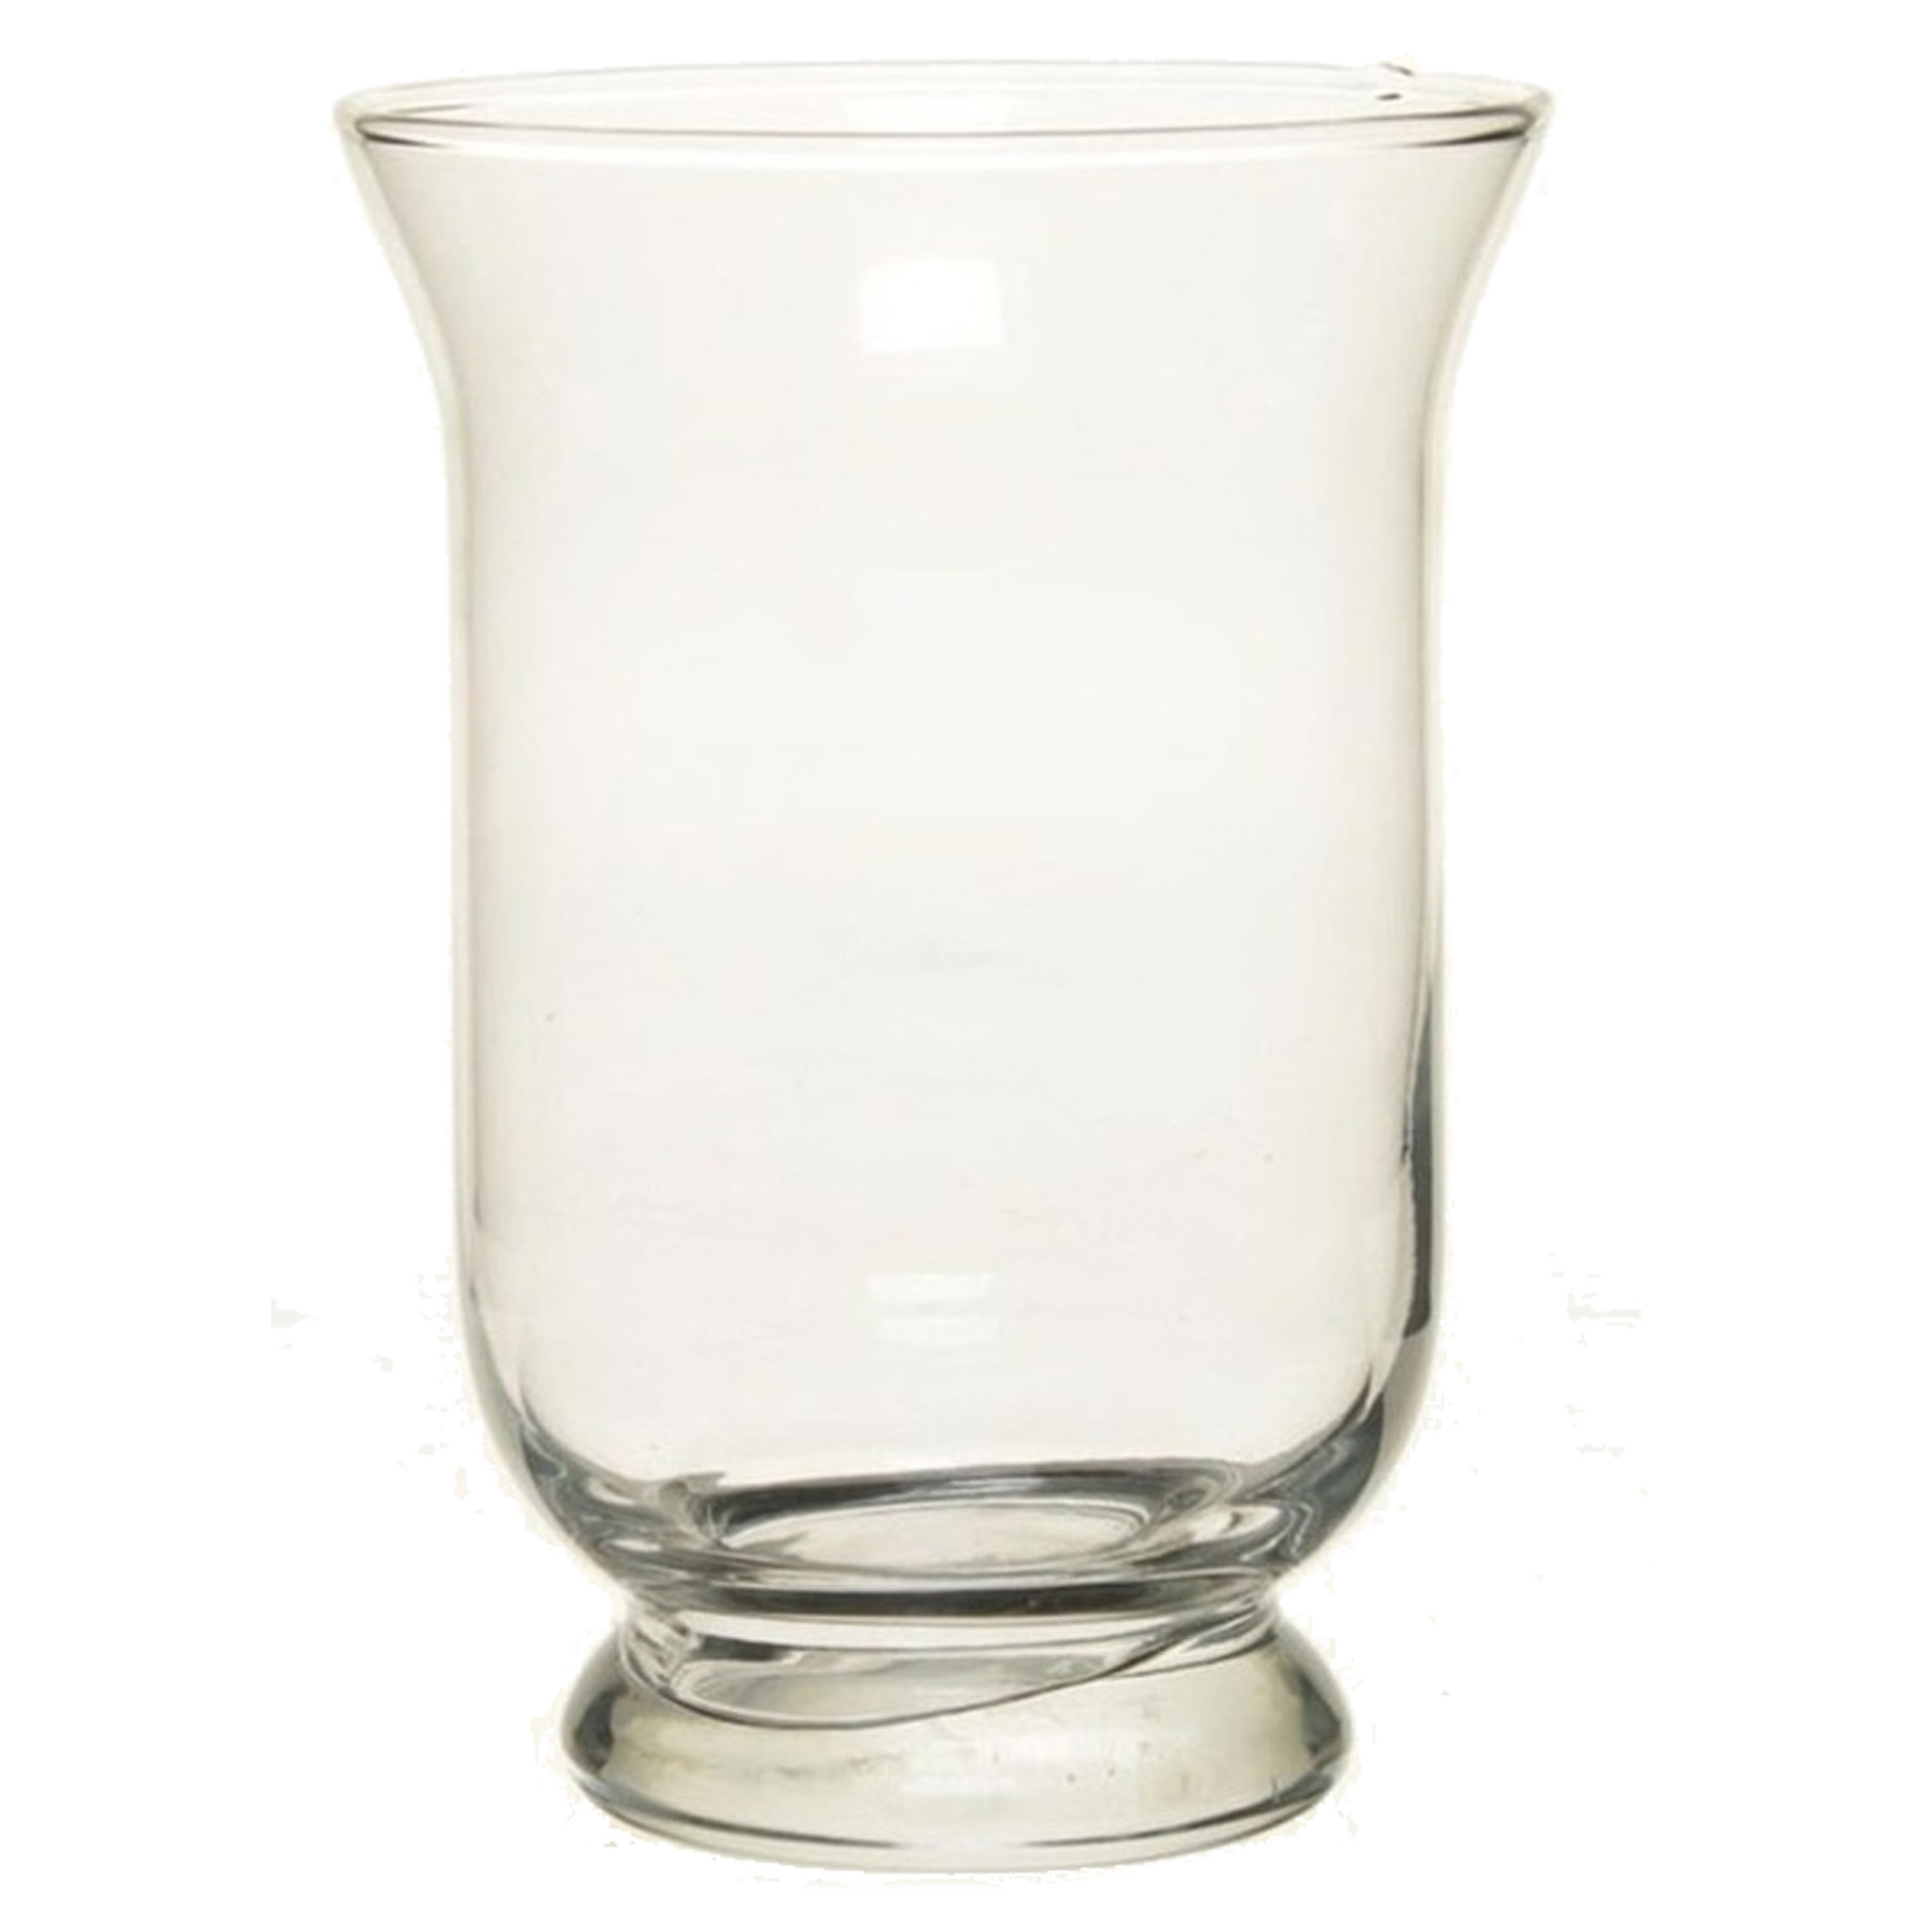 Bellatio Design kelk vaas-vazen van glas 19,5cm